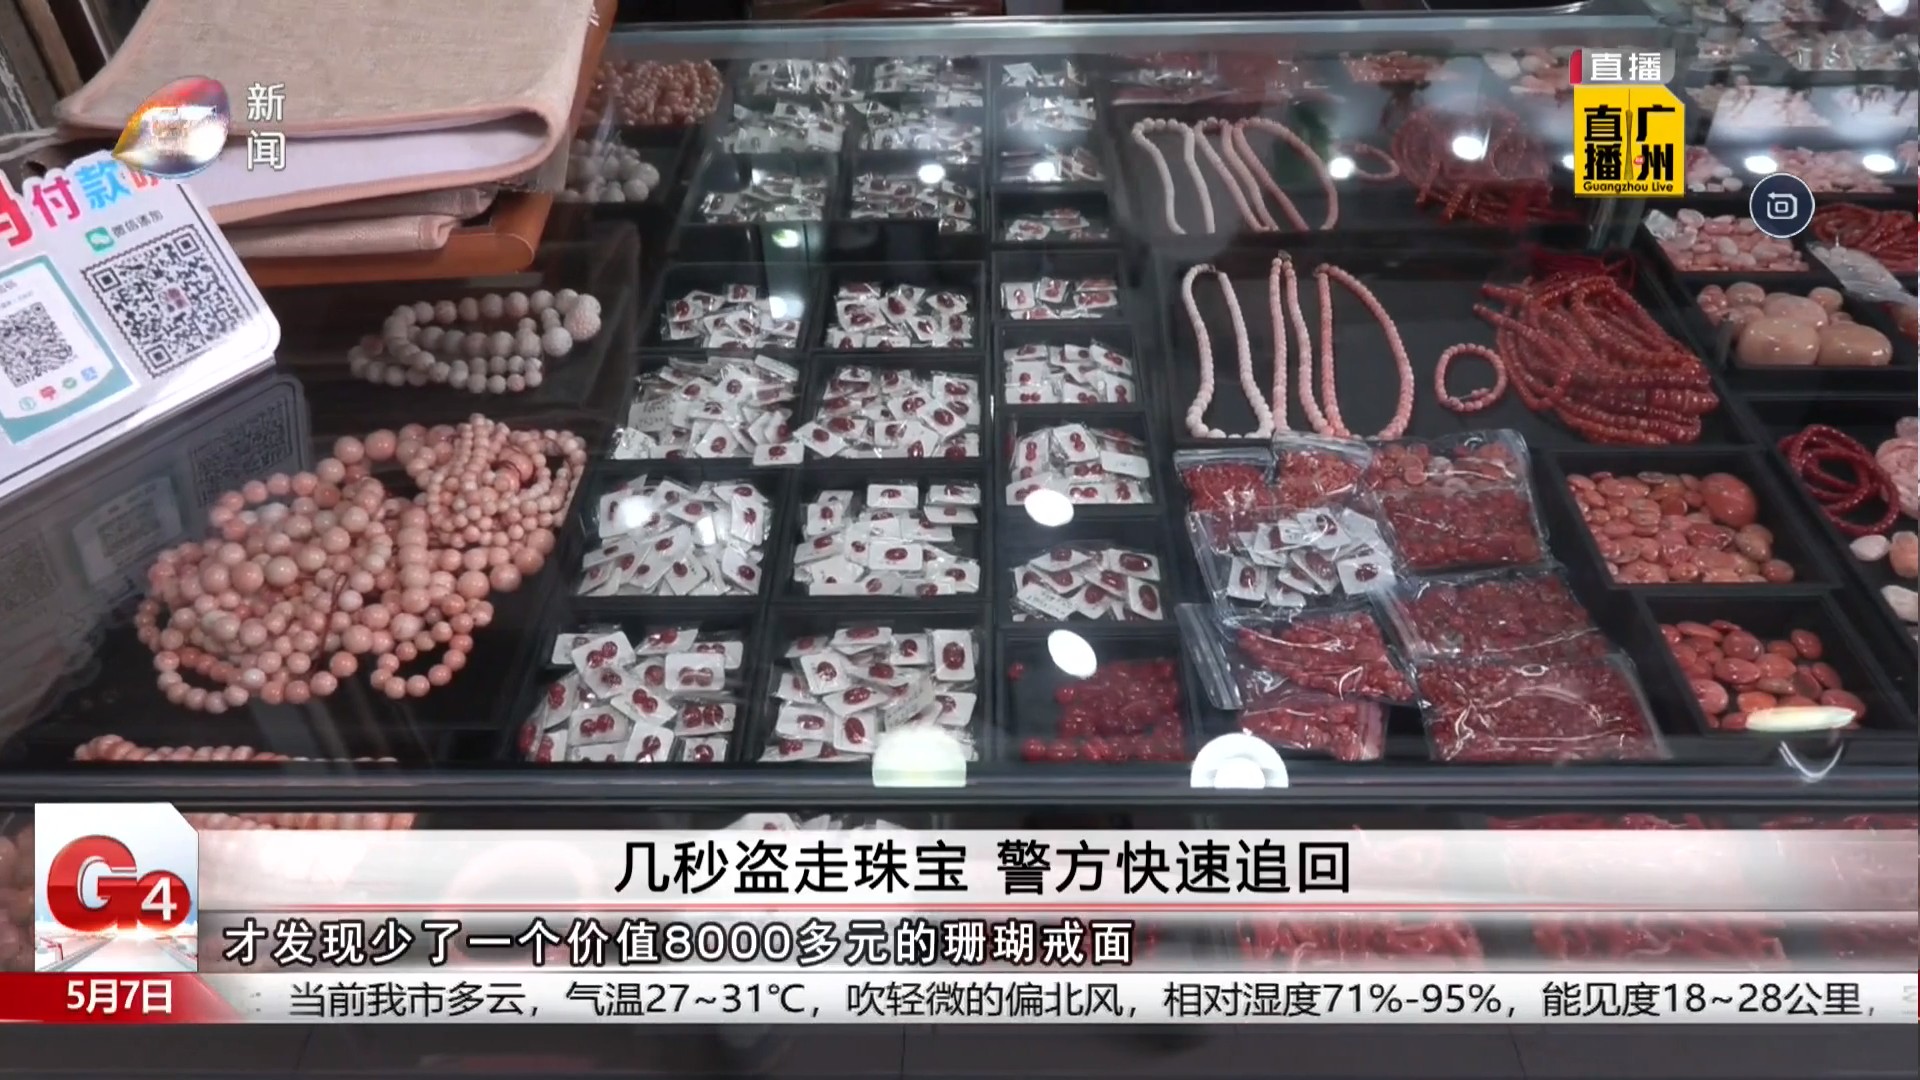 广州台新闻频道 G4出动 几秒盗走珠宝 警方快速追回